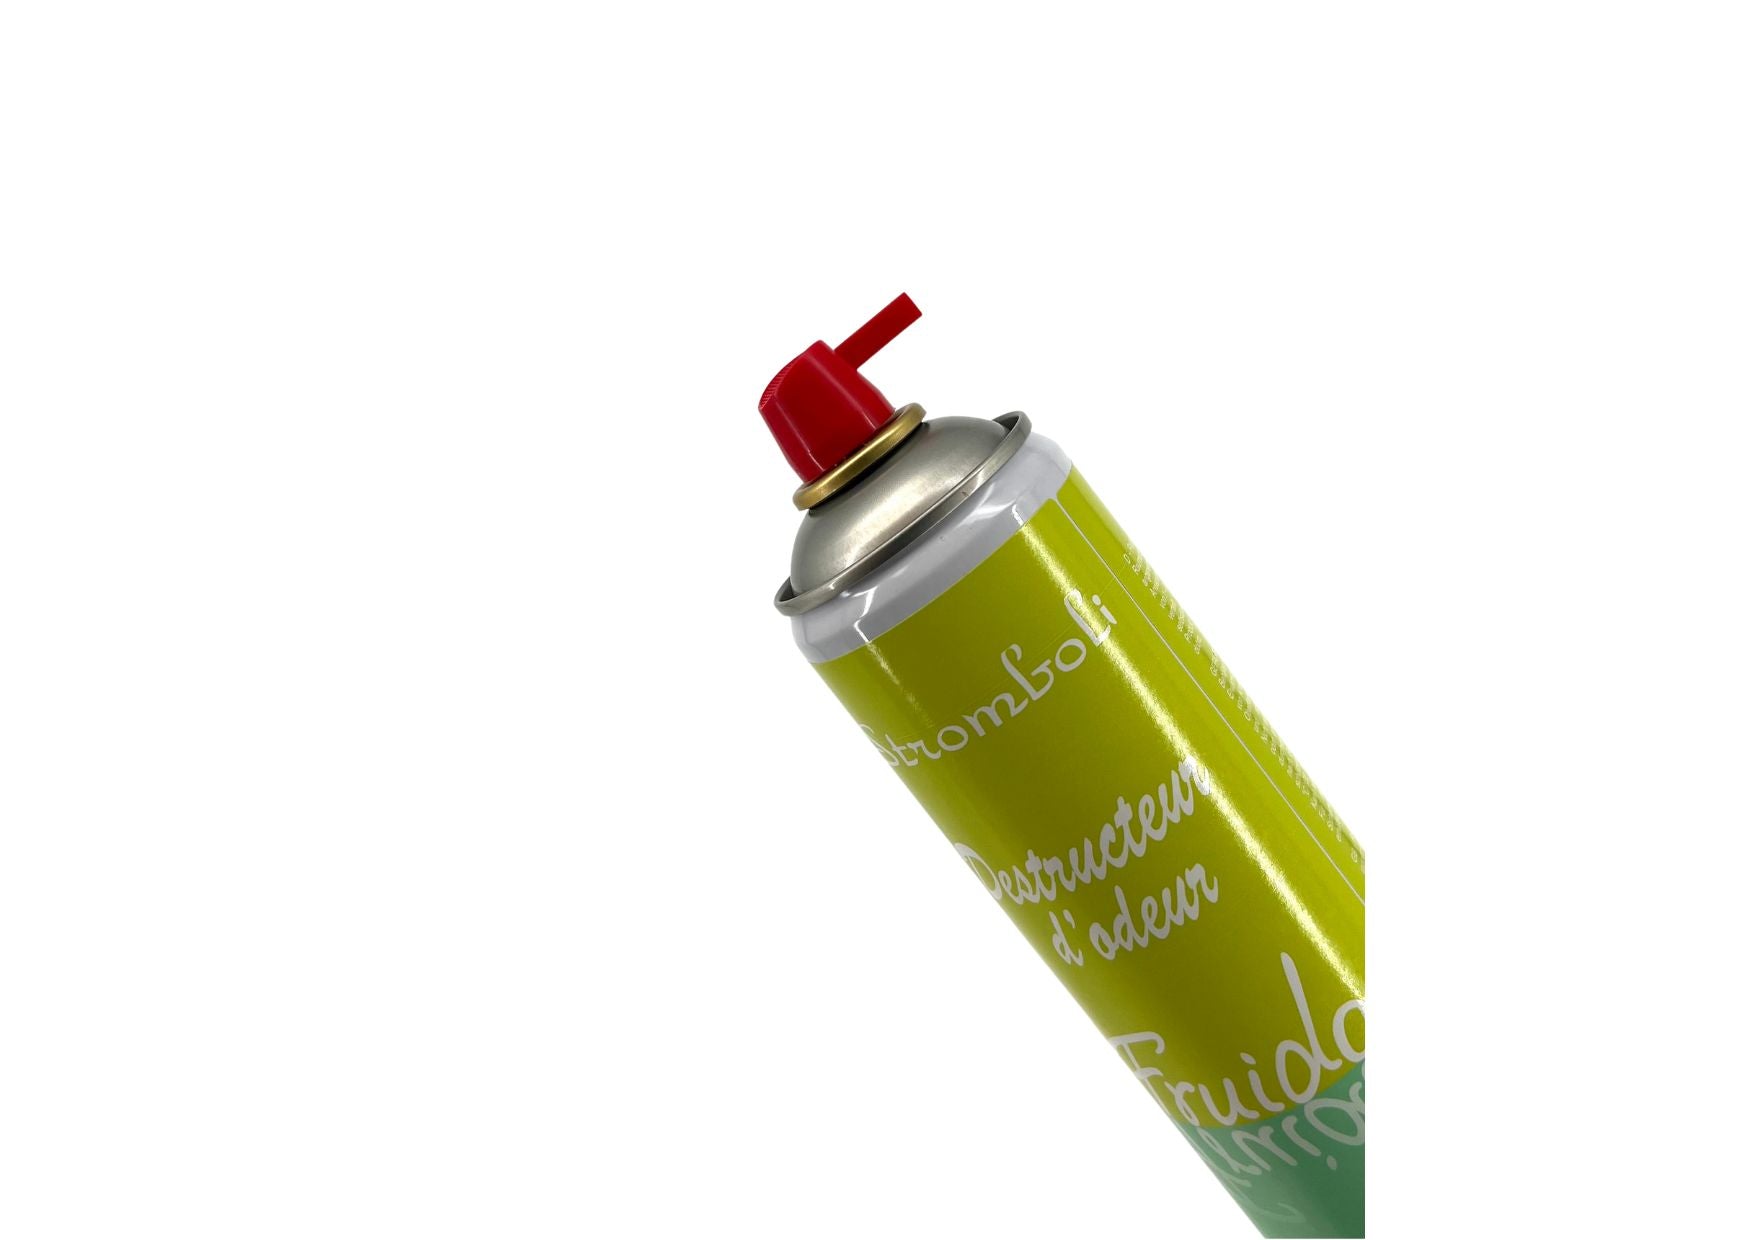 Dobro Stromboli Verveine odor eliminator spray